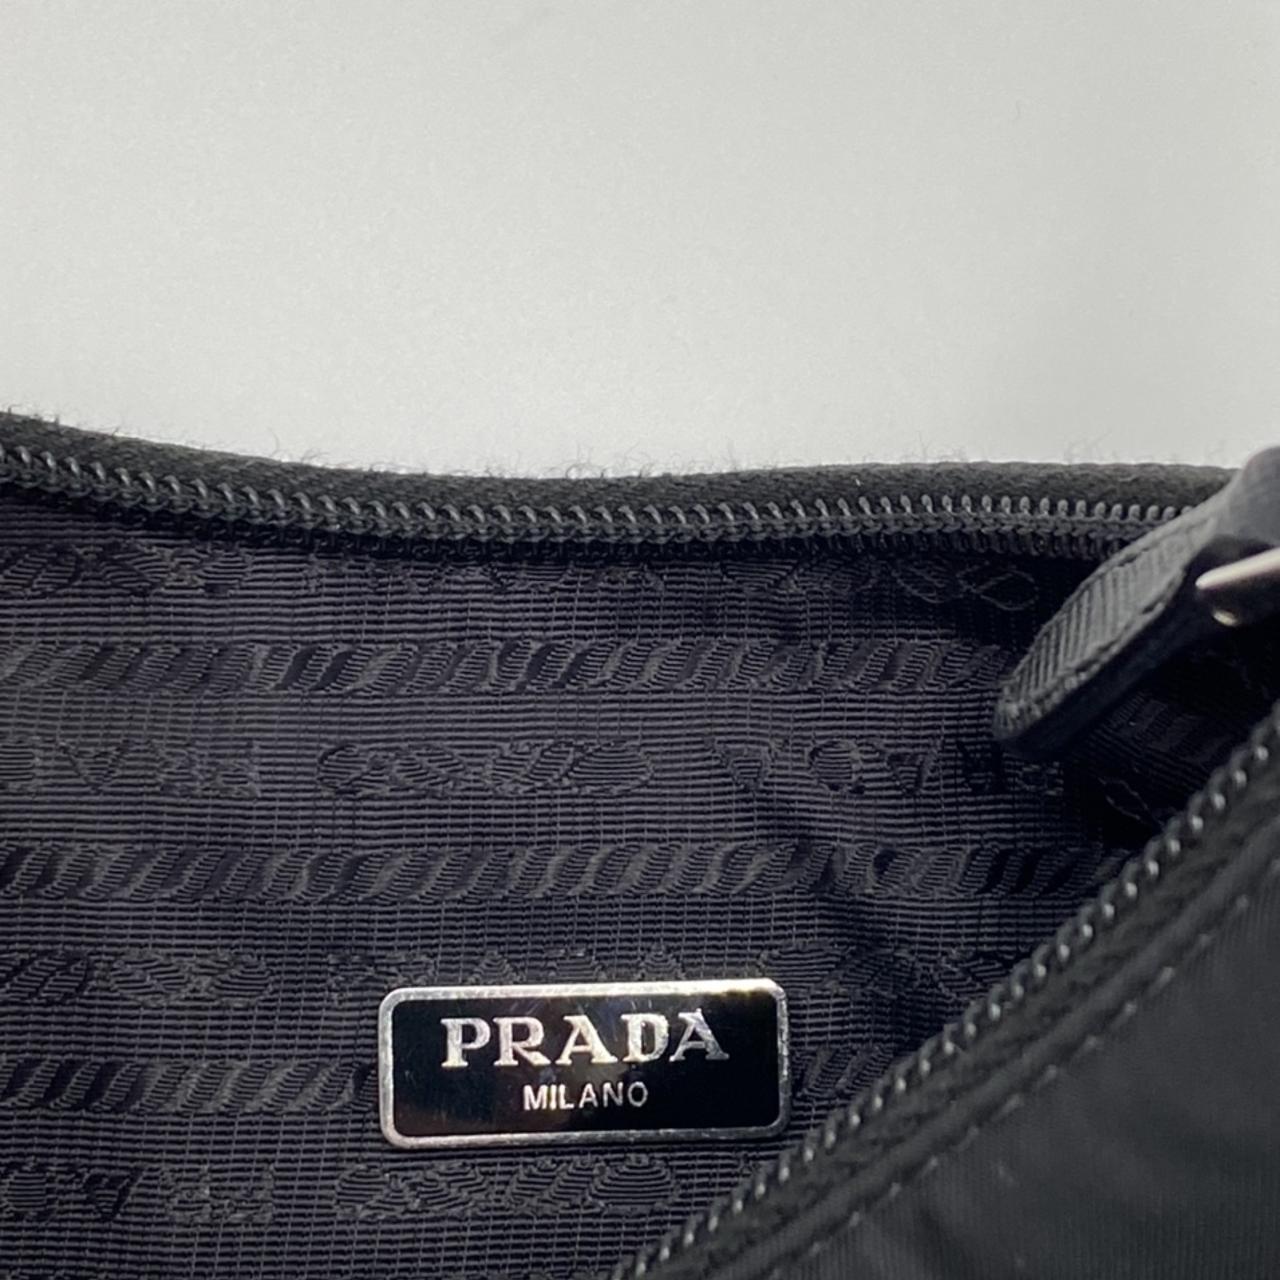 Prada re edition hand bag Practically brand new,... - Depop